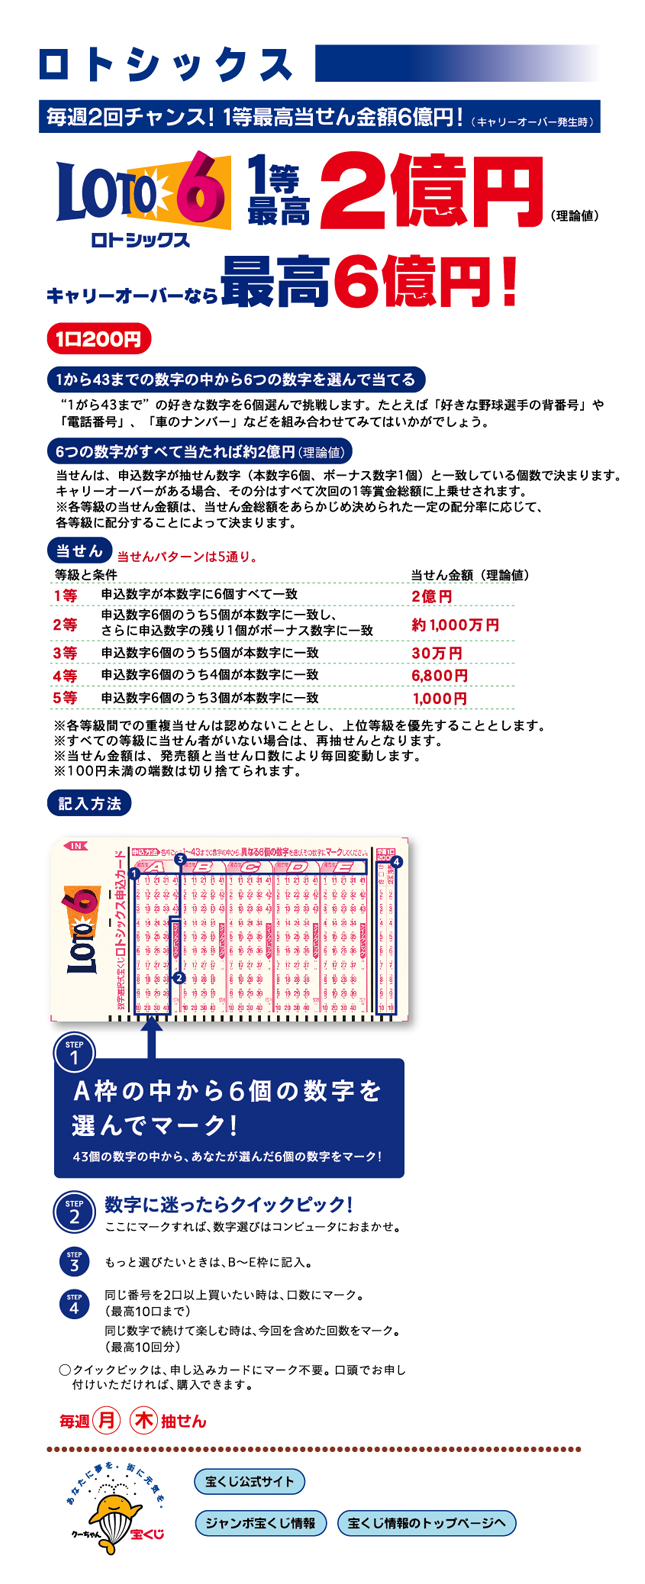 超过洛特西克斯的话最高6亿日元! 理论值的话,从1等最高2亿日元1到43的数字中选出6个数字猜中1个200日元每周周一、周四抽选